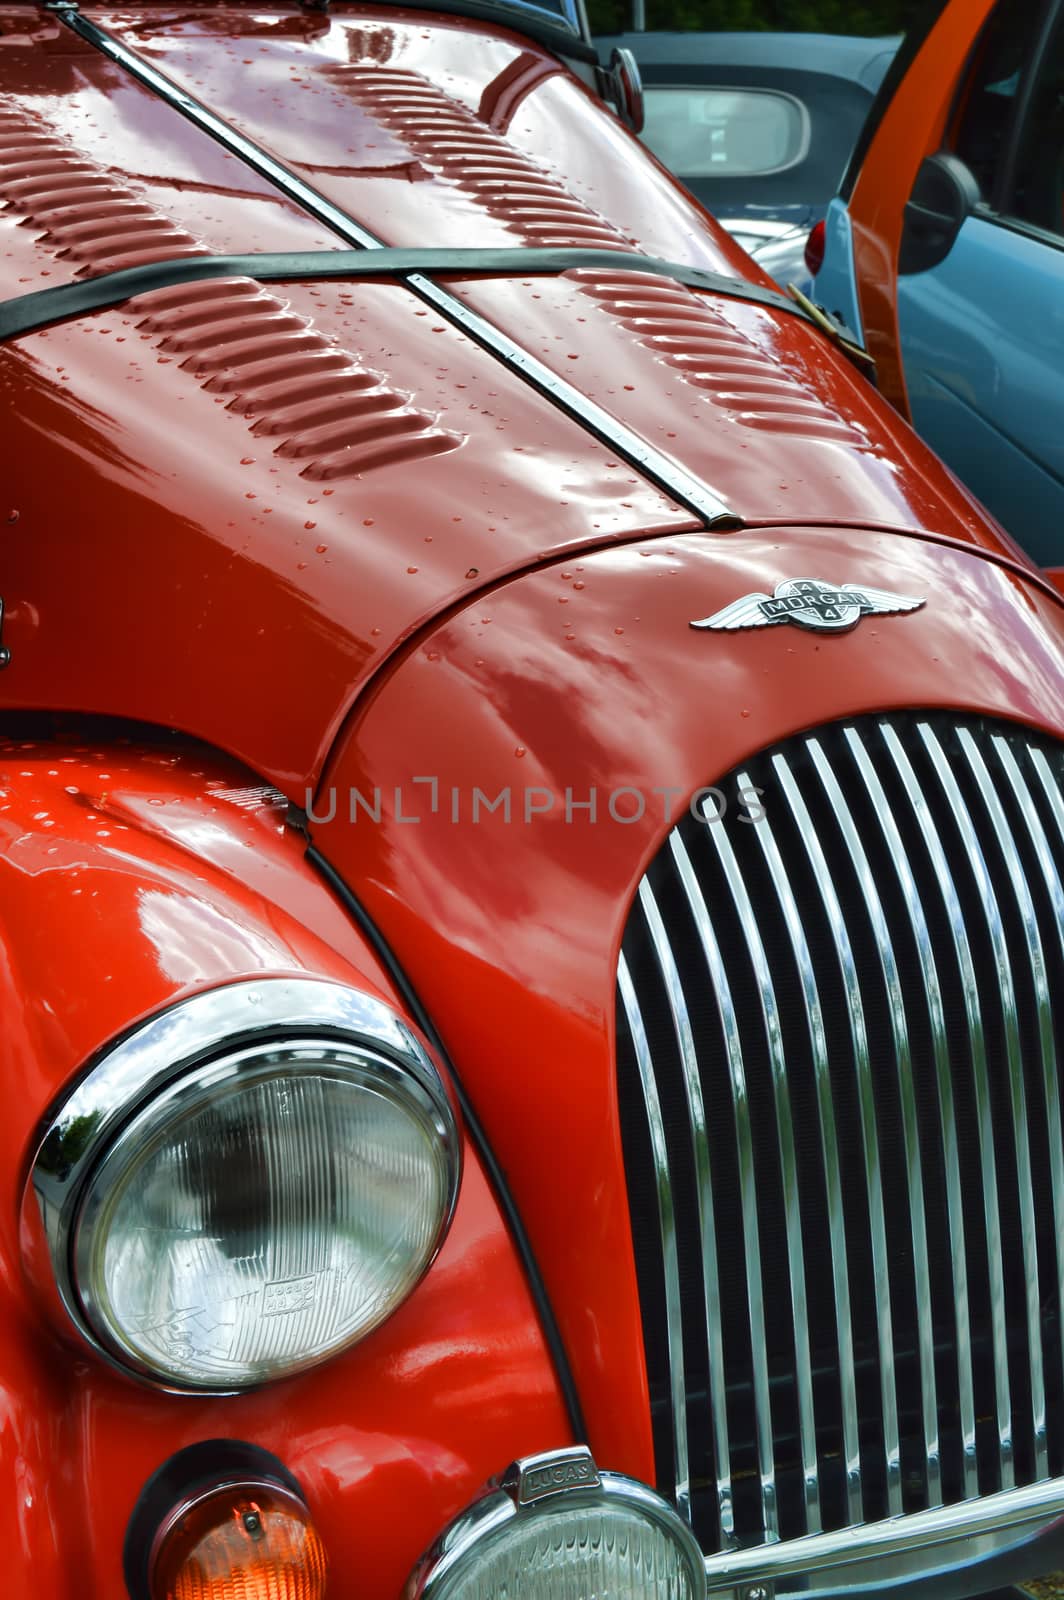 a red morgan 4/4 classic car